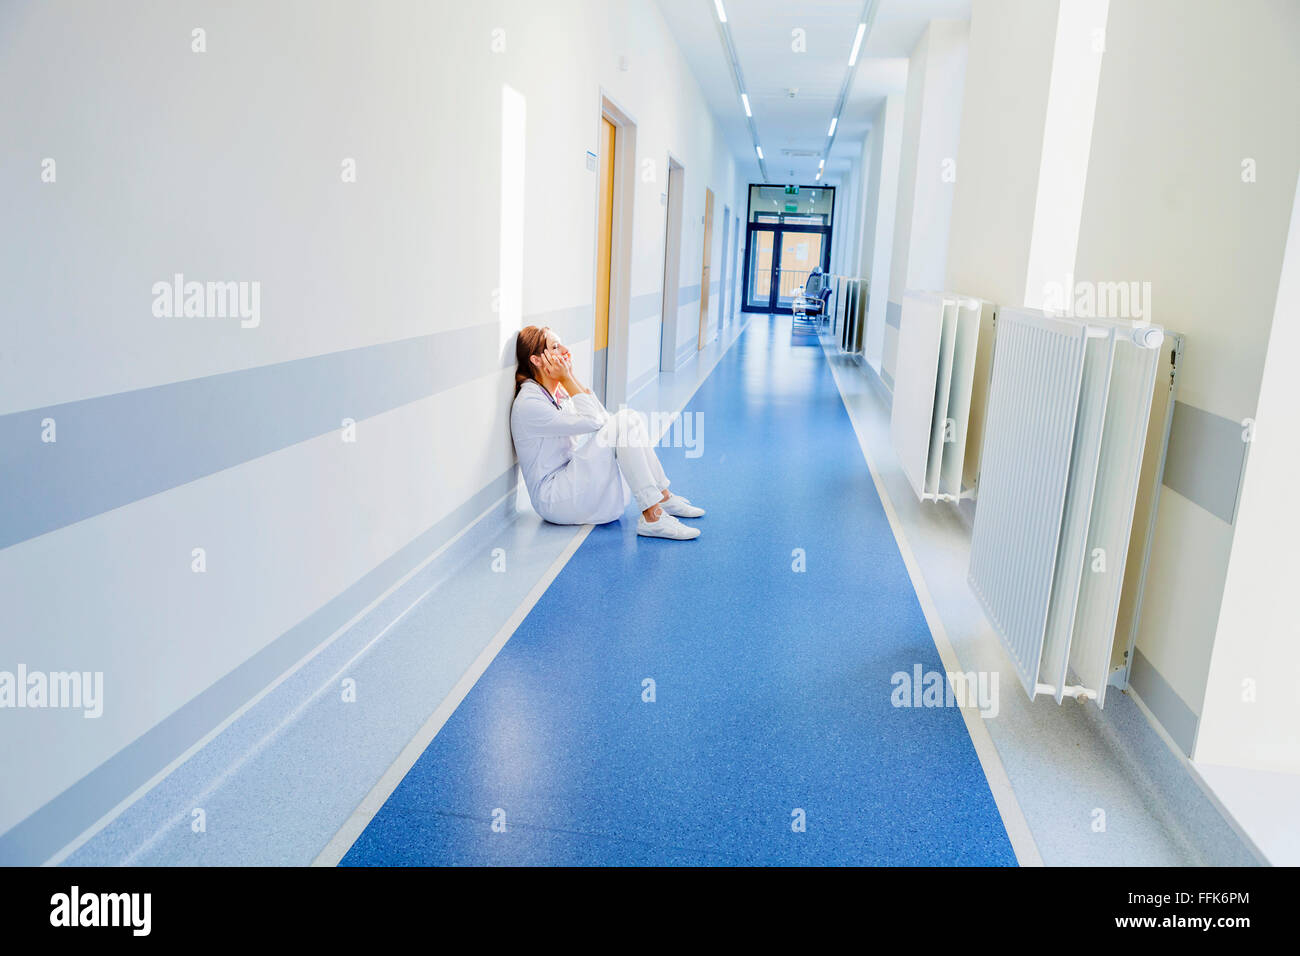 Überarbeitet am Boden im Krankenhausflur Mitarbeiter Stockfoto